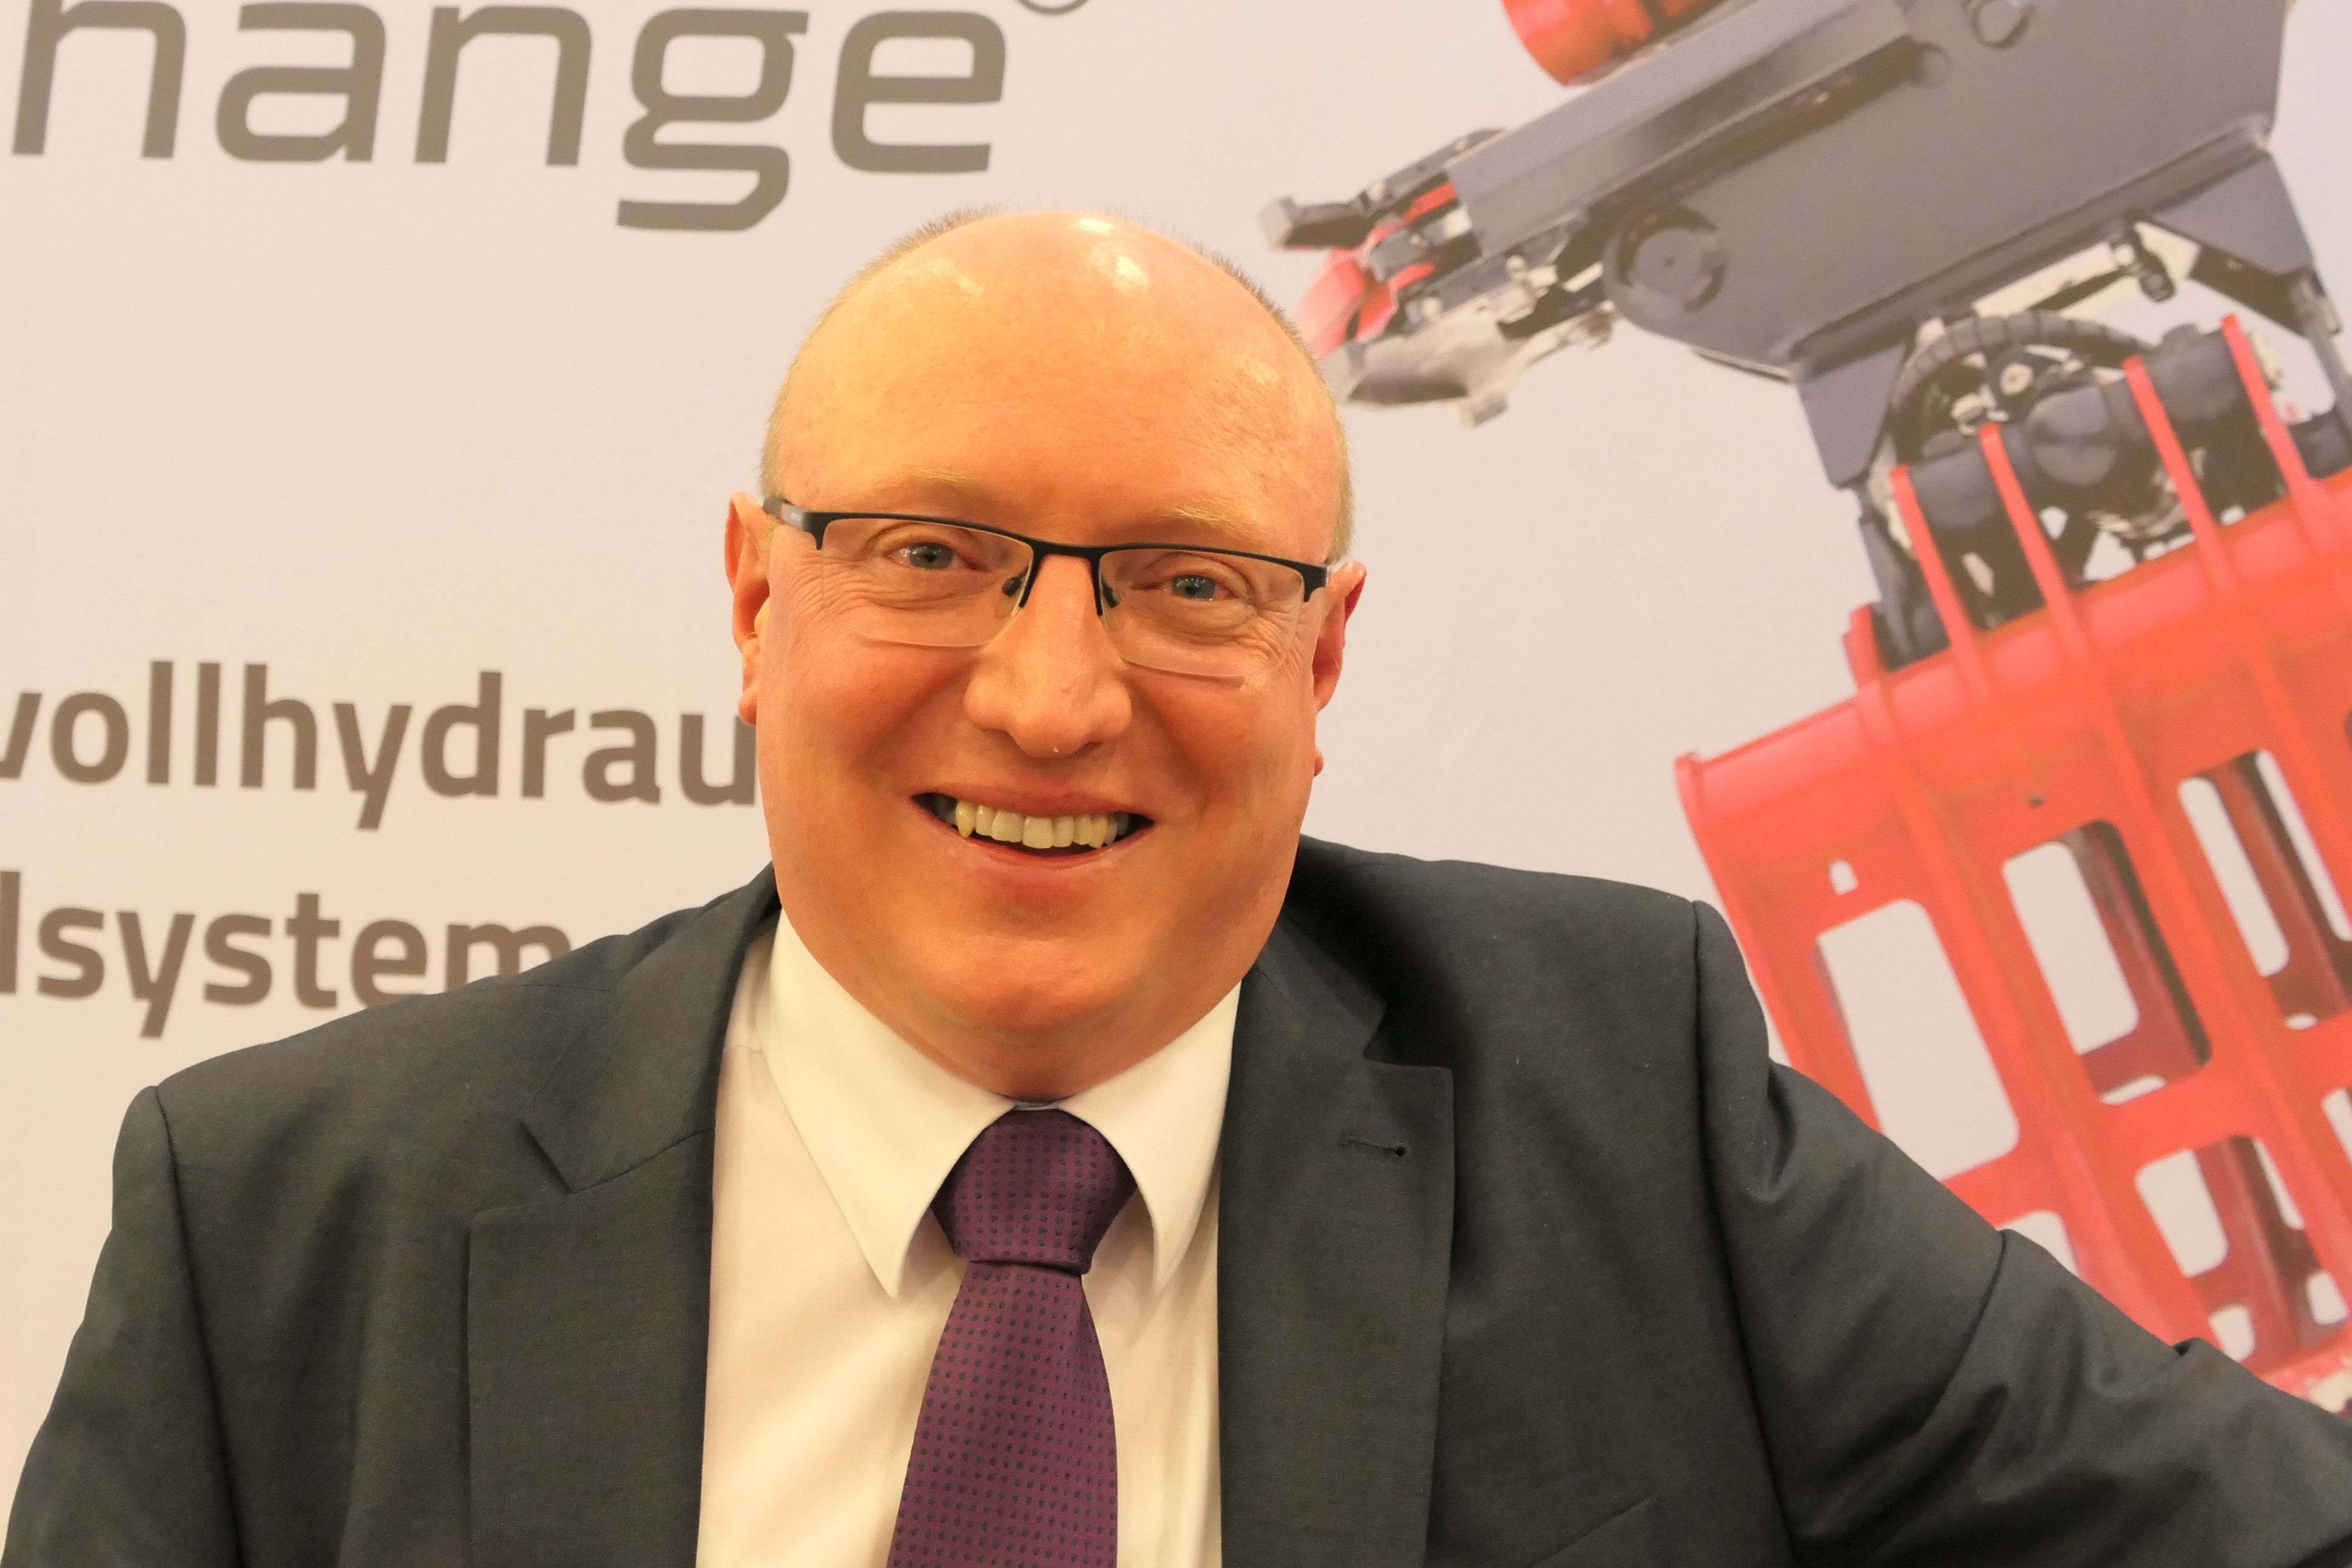 Wolfgang Vogl, Geschäftsführer der Rototilt GmbH mit Sitz in Regensburg, verantwortet die Märkte Deutschland, Österreich und die Schweiz.